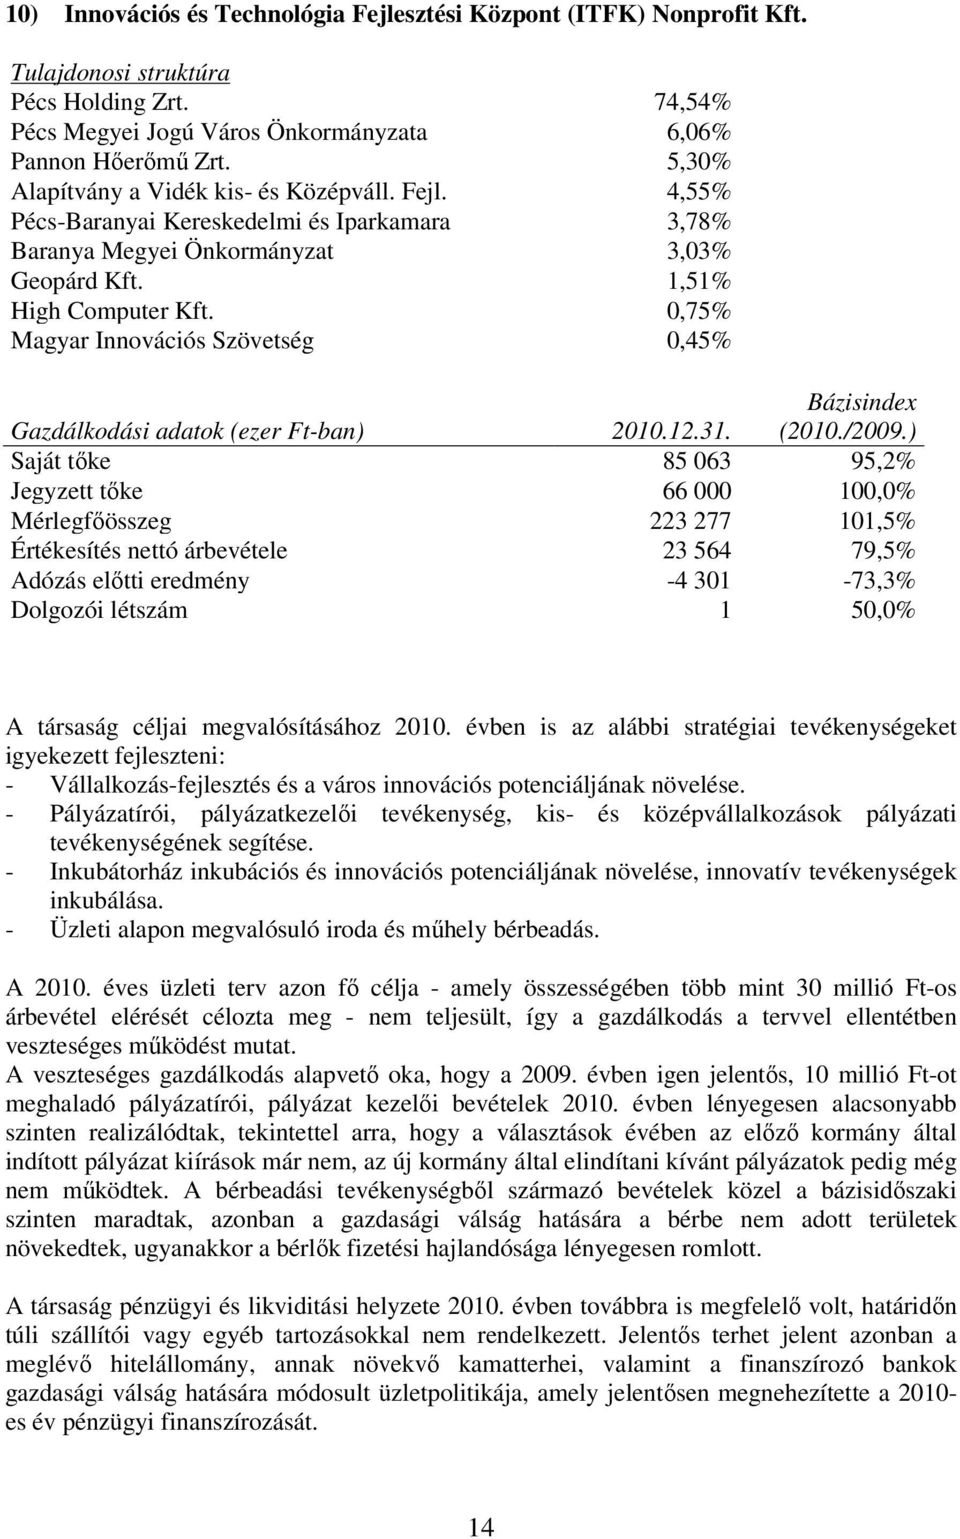 0,75% Magyar Innovációs Szövetség 0,45% Gazdálkodási adatok (ezer Ft-ban) 2010.12.31. Bázisindex (2010./2009.